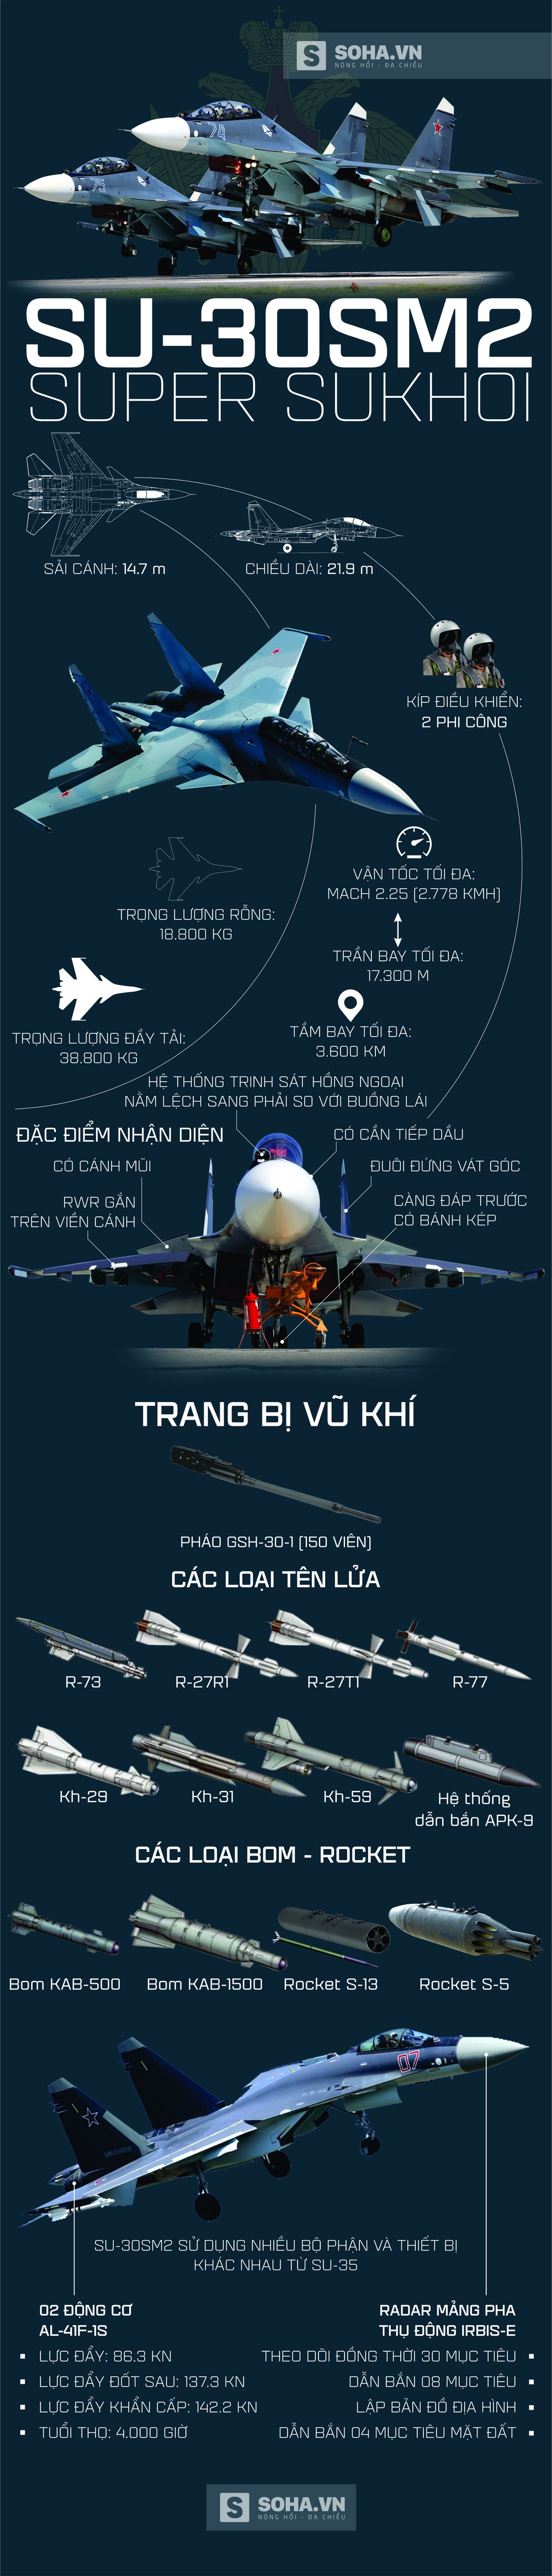 Sau Su-30MK2, đây sẽ là loại tiêm kích xương sống tuyệt vời của Không quân Việt Nam? - Ảnh 2.